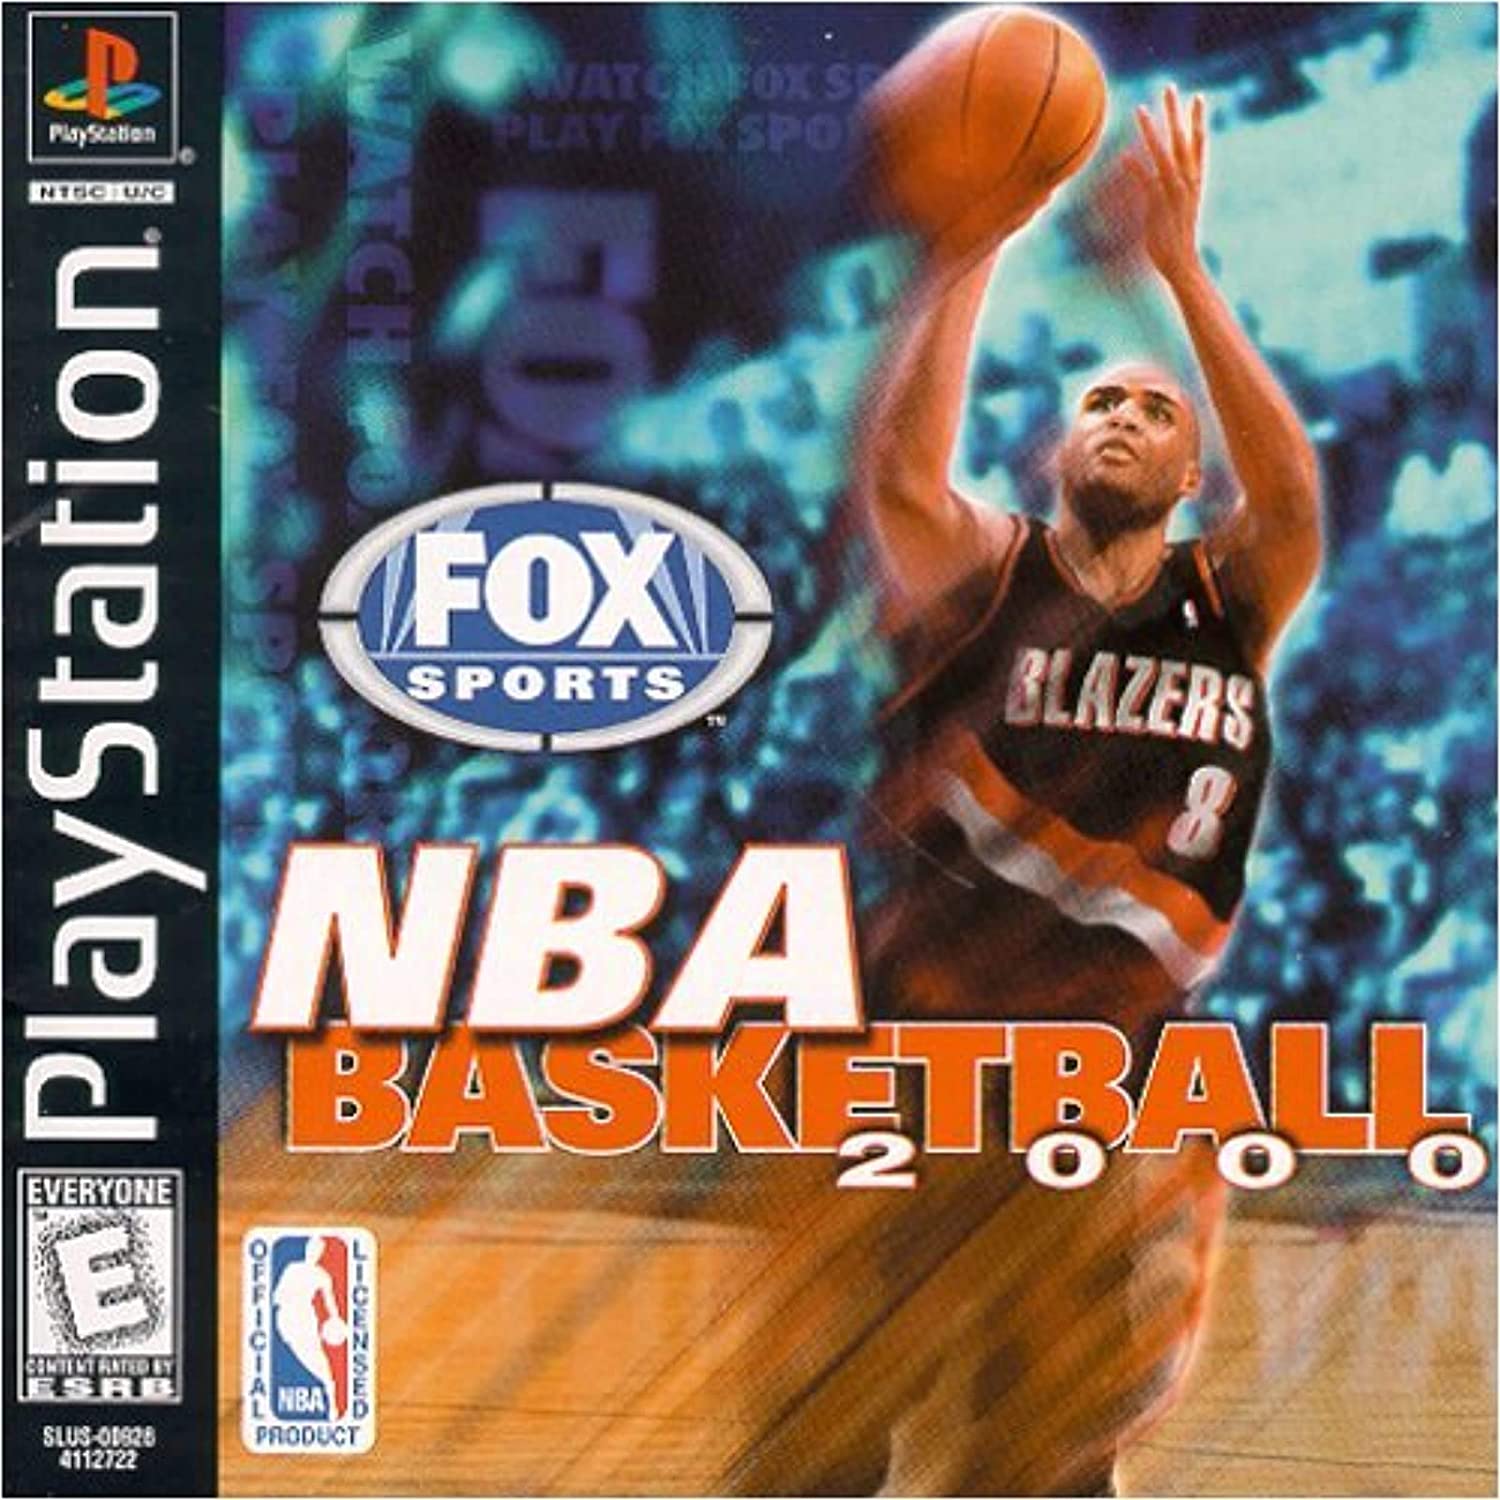 NBA Basketball 2000 player count stats